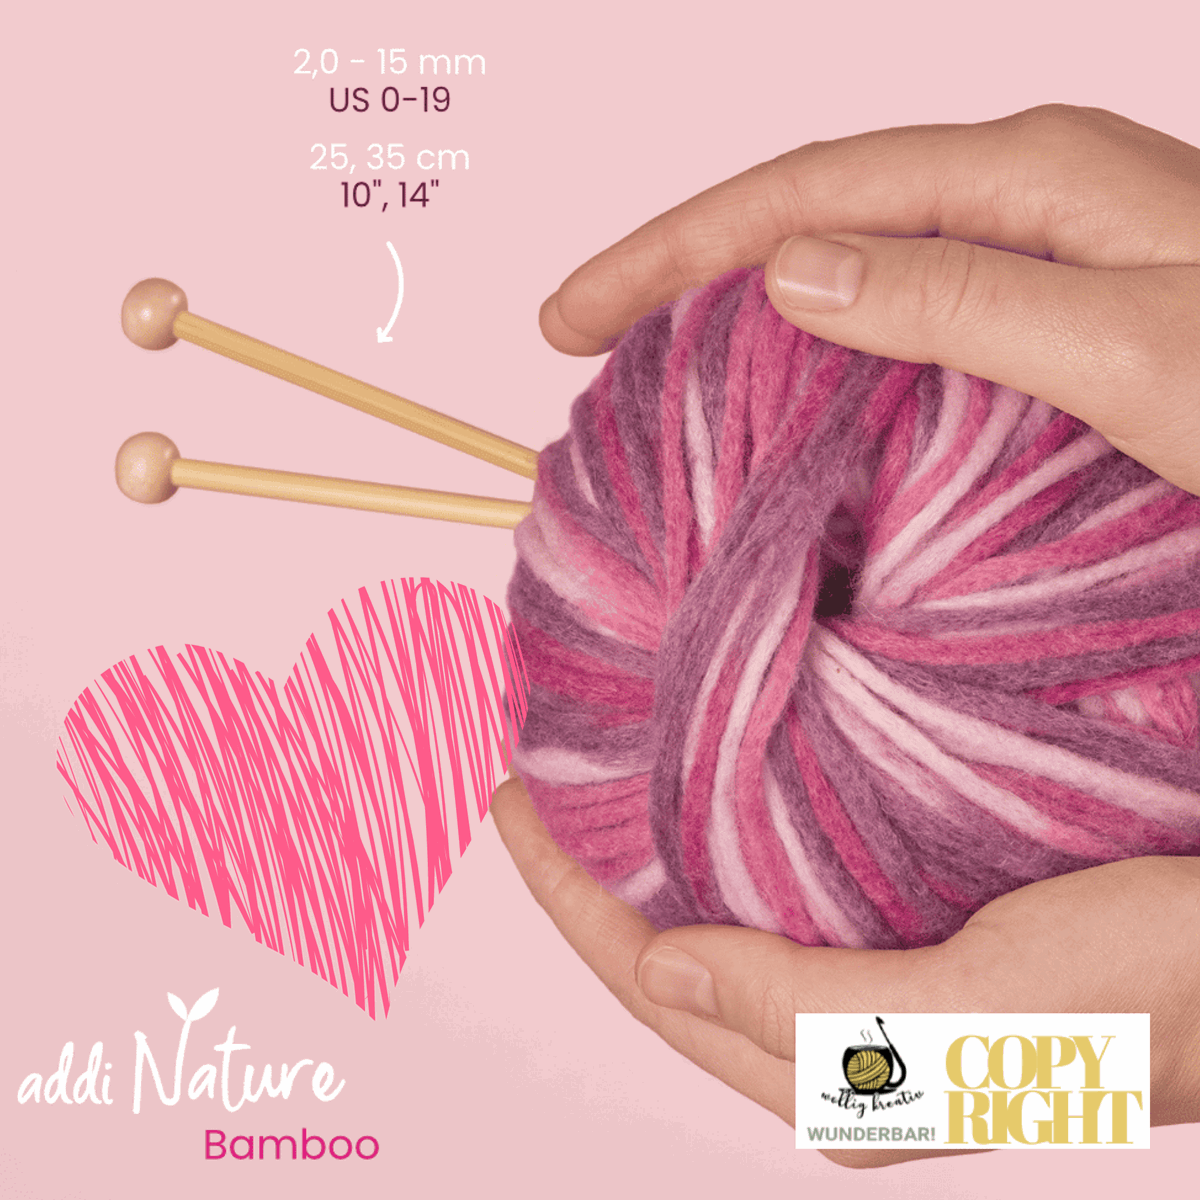 Addi, Nature Bamboo jacket knitting needle, 65007, size 10, length 35